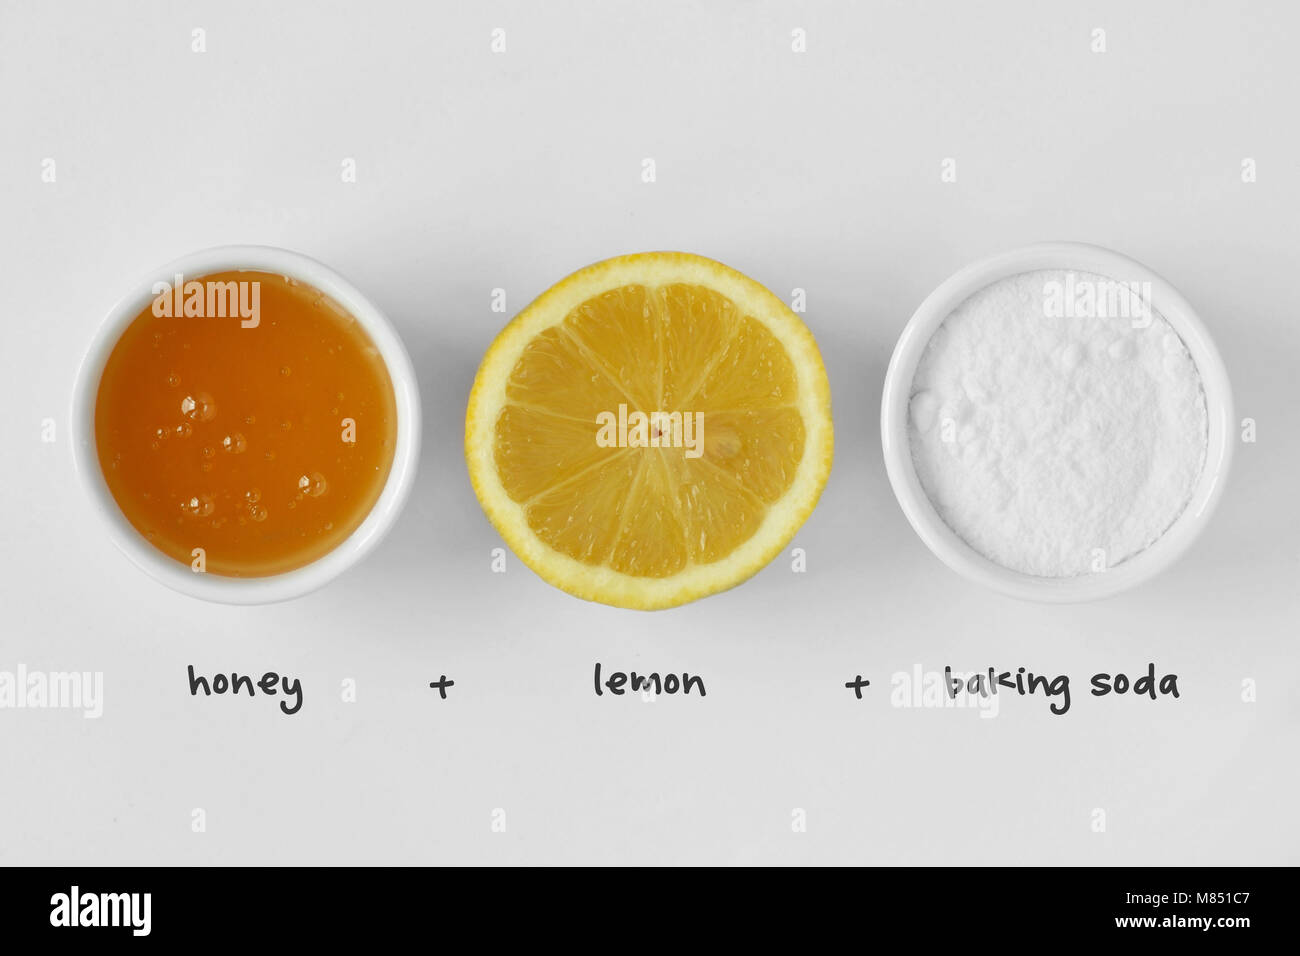 Hausgemachte Gesichtsmaske aus Honig, Zitronensaft und Backpulver auf  weißem Hintergrund Stockfotografie - Alamy